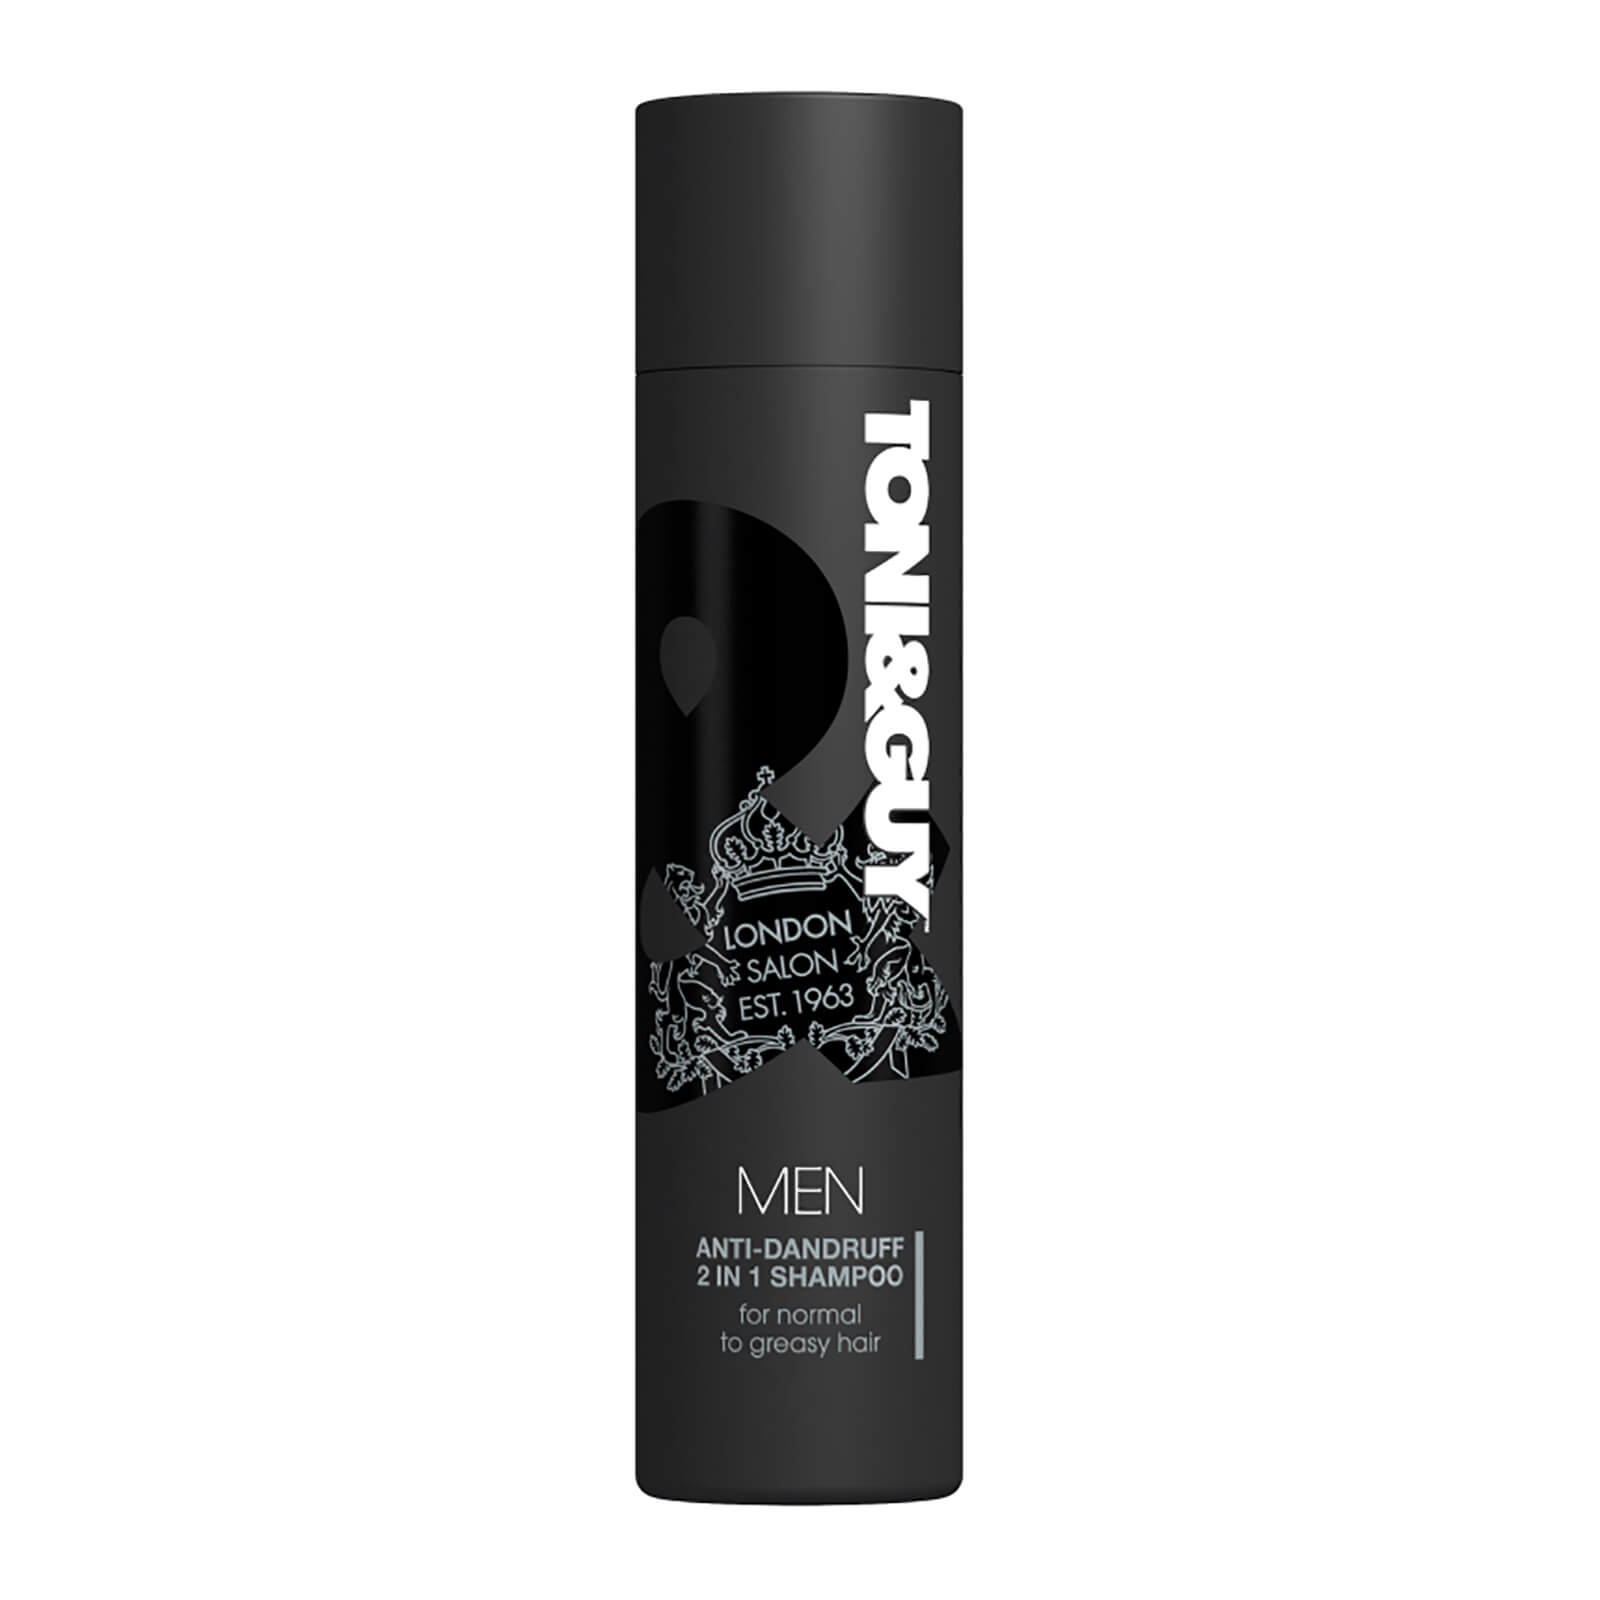 Toni & Guy Men's Anti-Dandruff Shampoo and Conditioner (250ml)